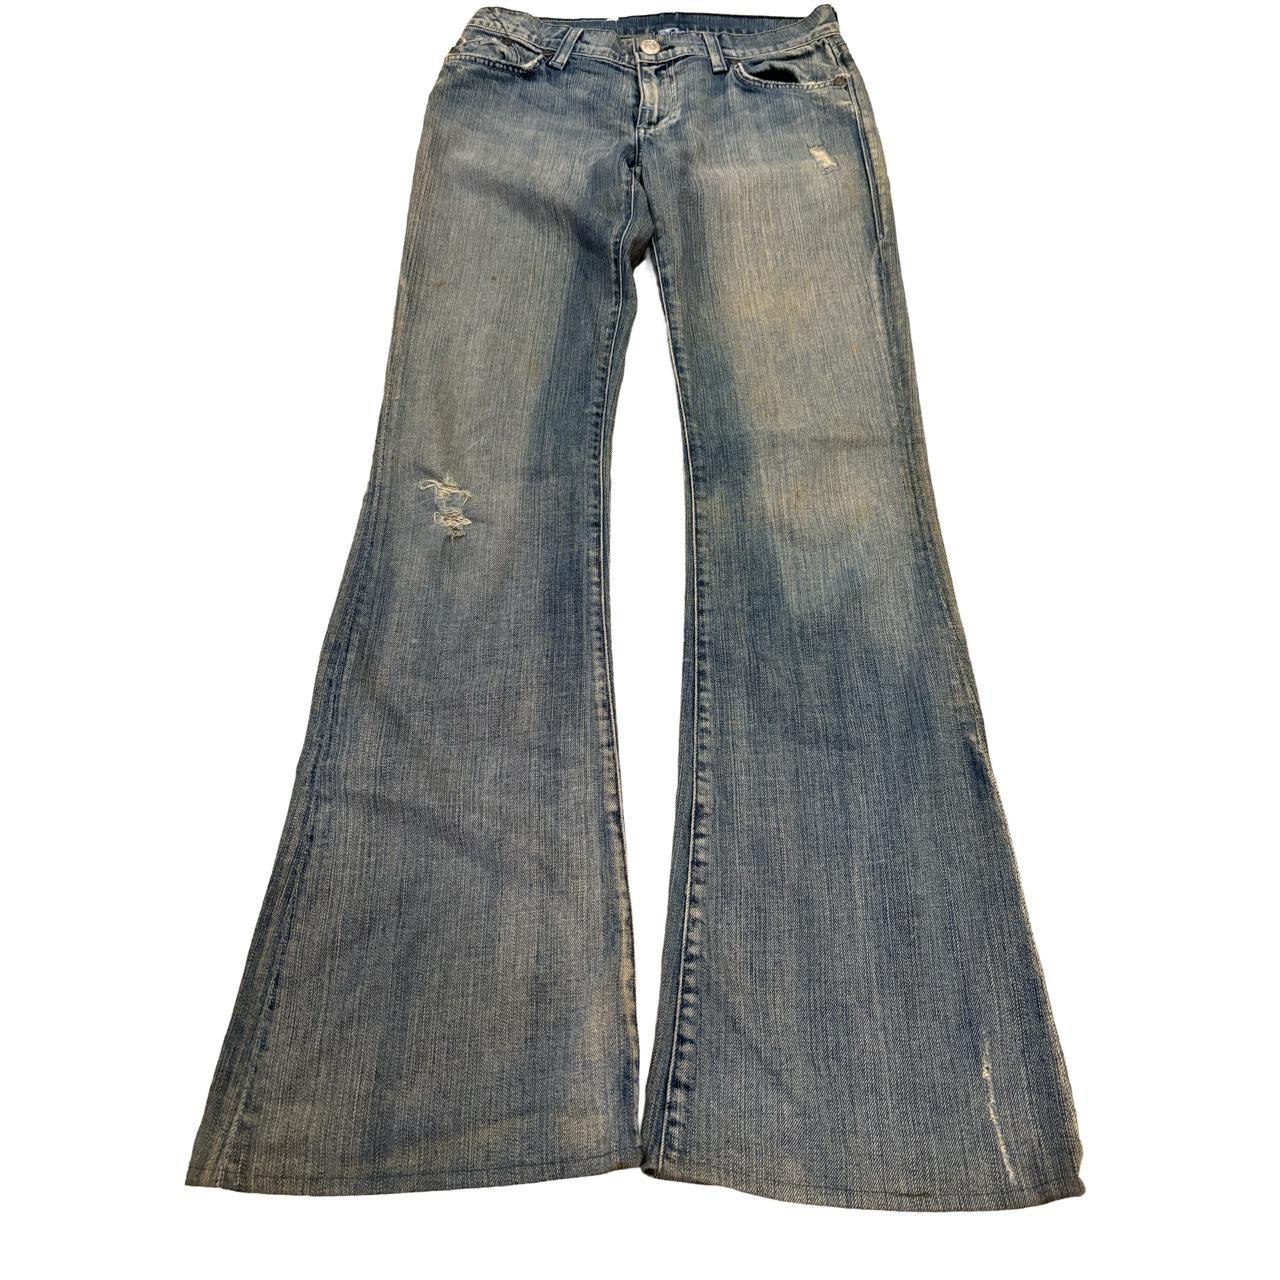 Bell bottom-jeans-vintage - Depop